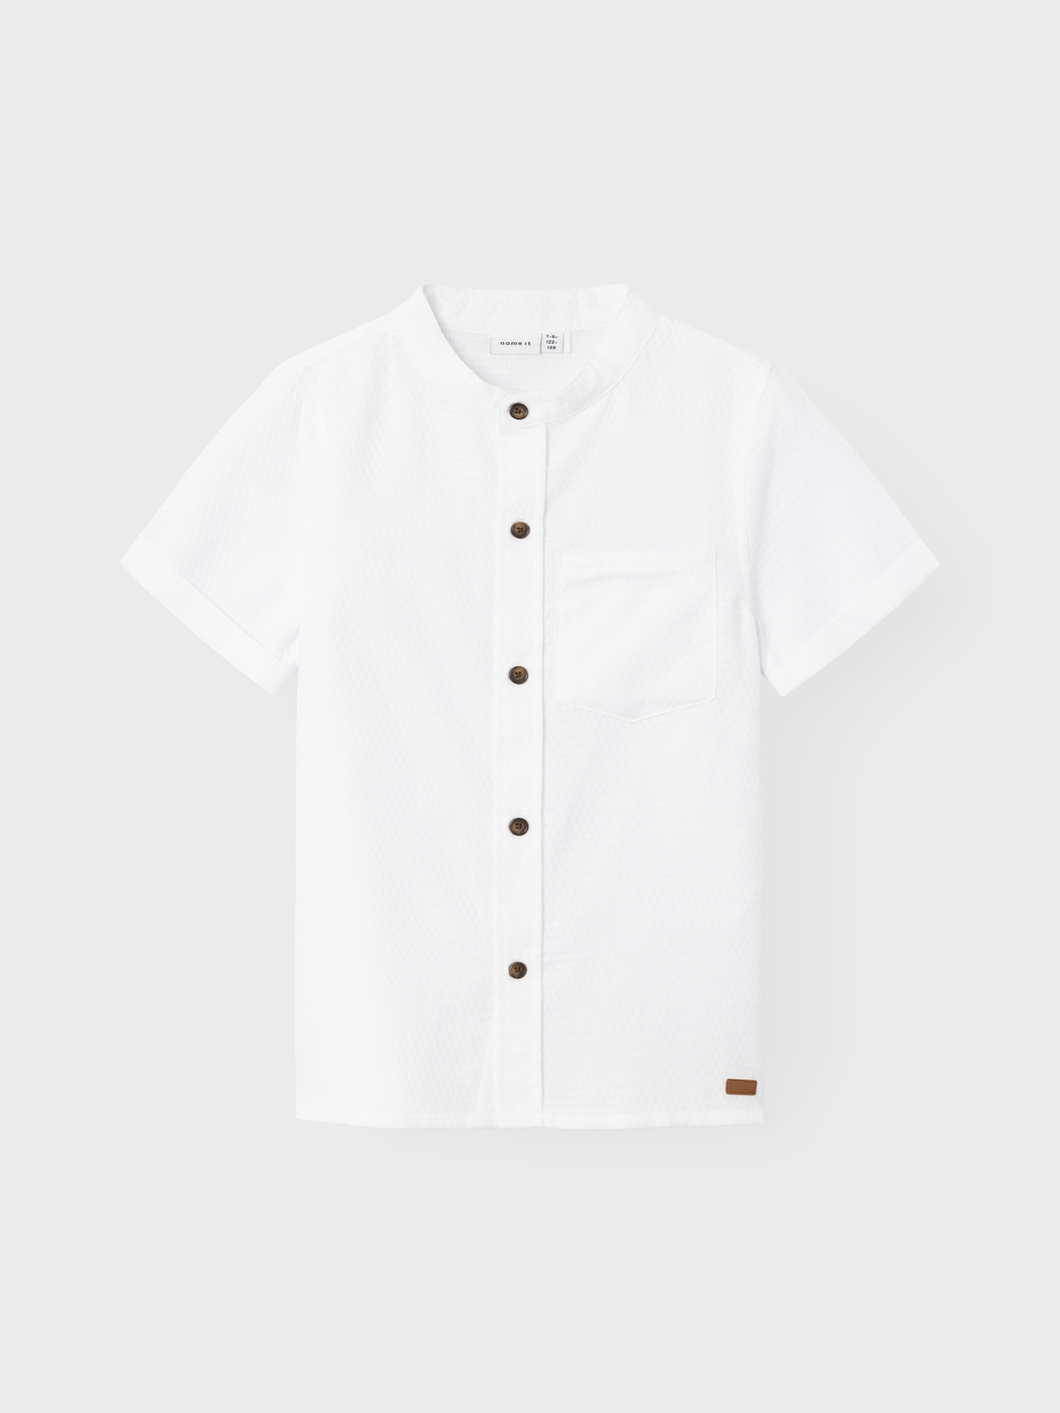 NKMHILANE T-Shirts & Tops - Bright White